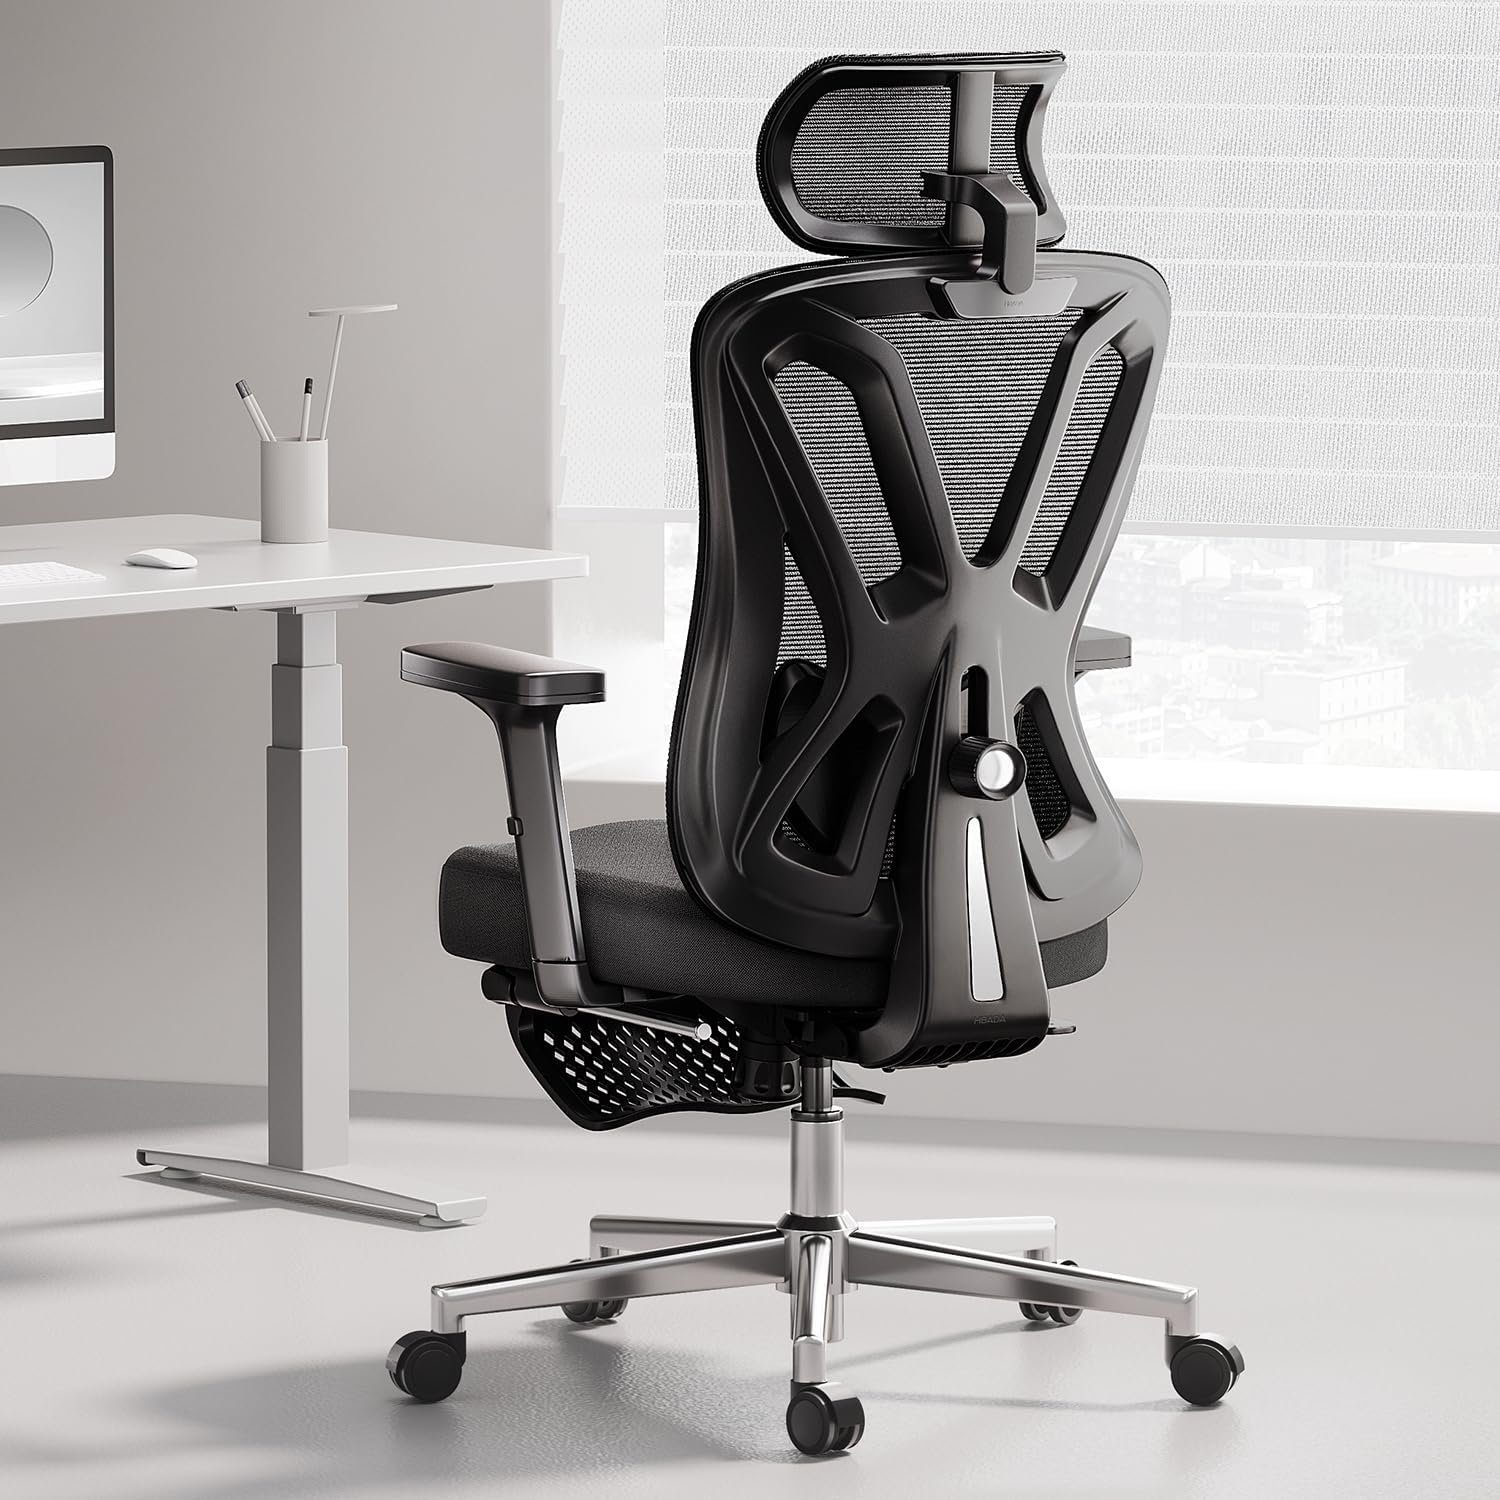 Hbada Bürostuhl (Bürostuhl ergonomisch: Schreibtischstuhl mit verstellbarem Sitz), Ergonomischer Bürostuhl, Schreibtischstuhl mit Verstellbarer